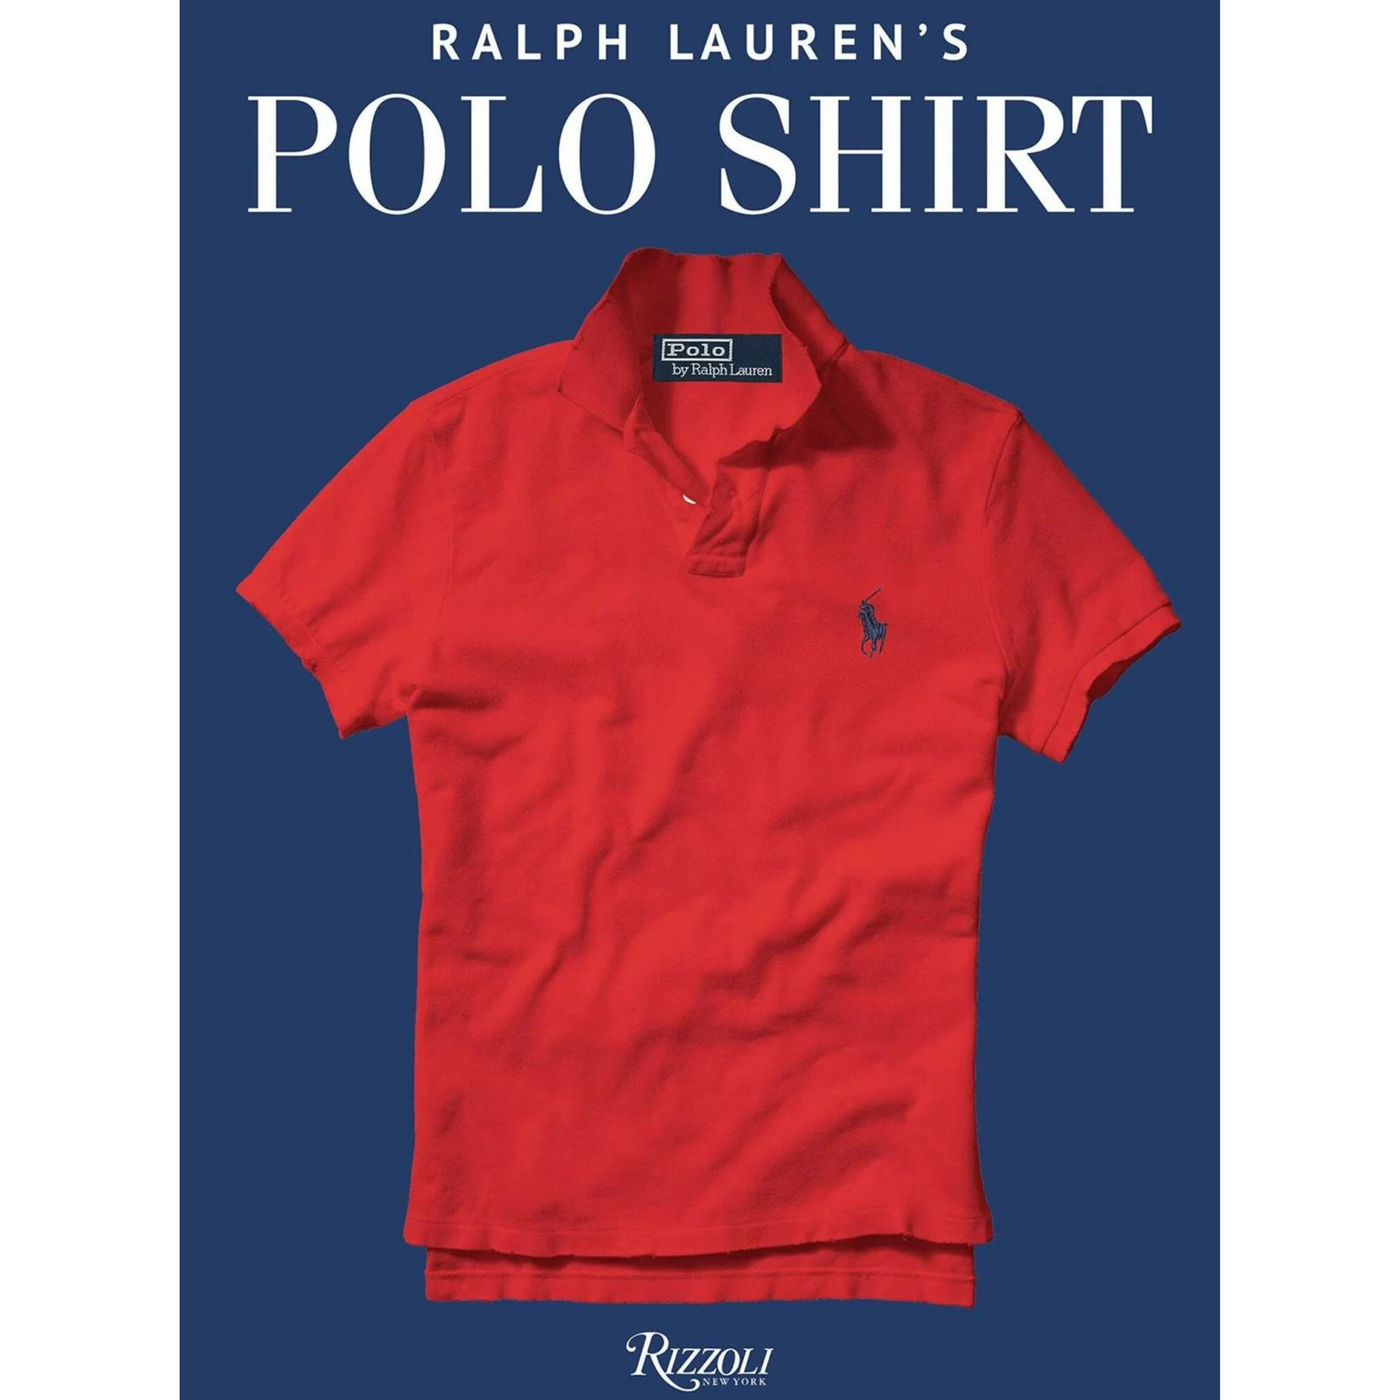 New Mags - Ralph Lauren's Polo Shirt